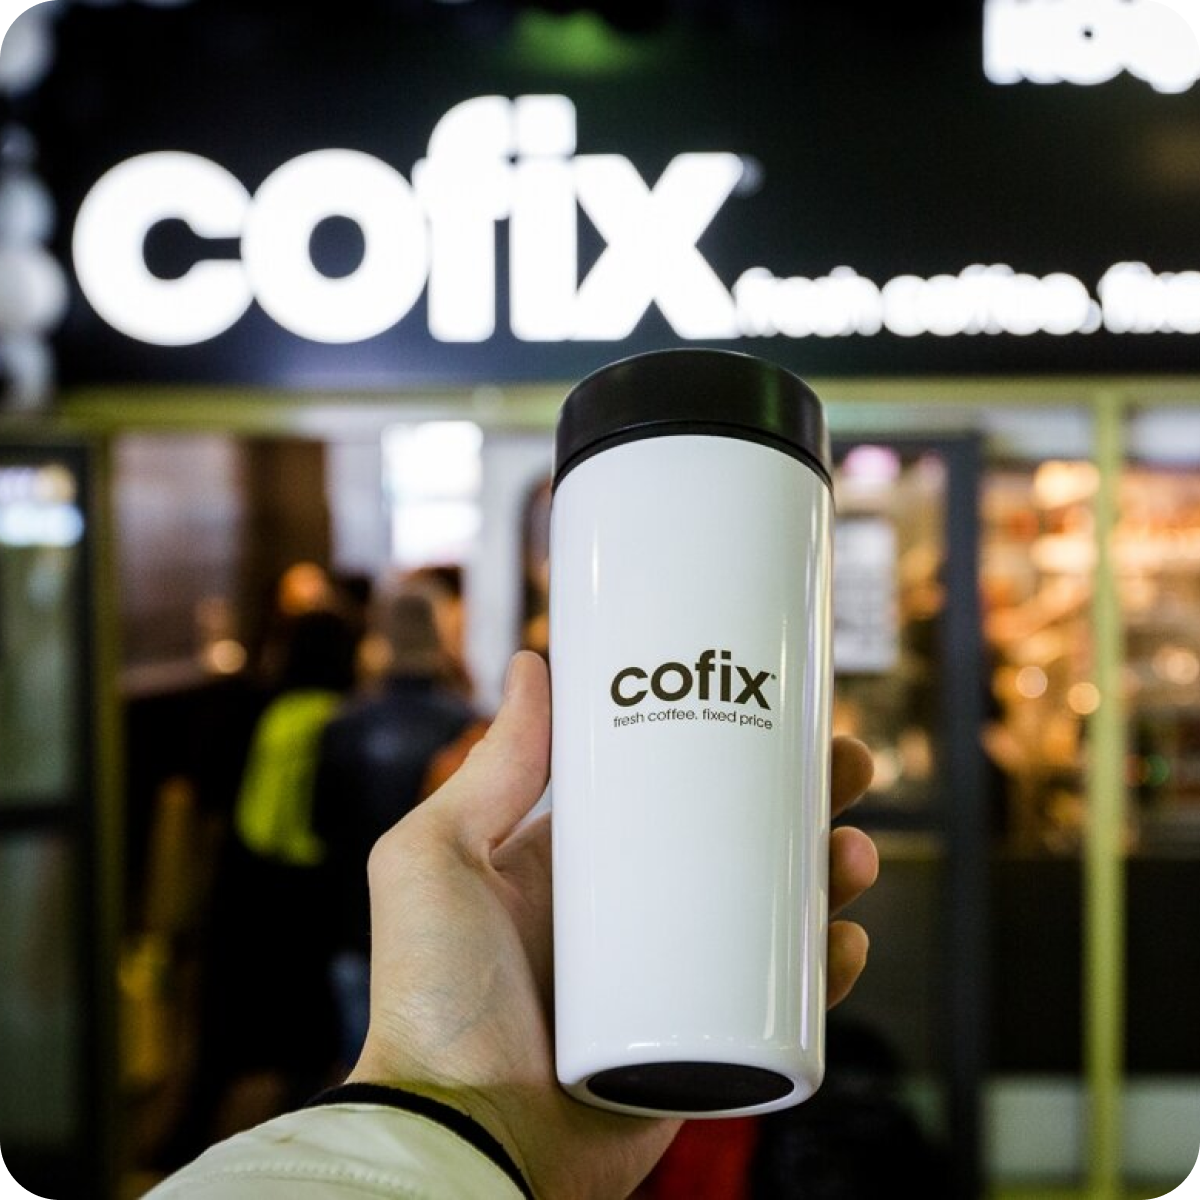 Кофекс. Cofix. Cofix логотип. Cofix кафе. Кофе кофикс.